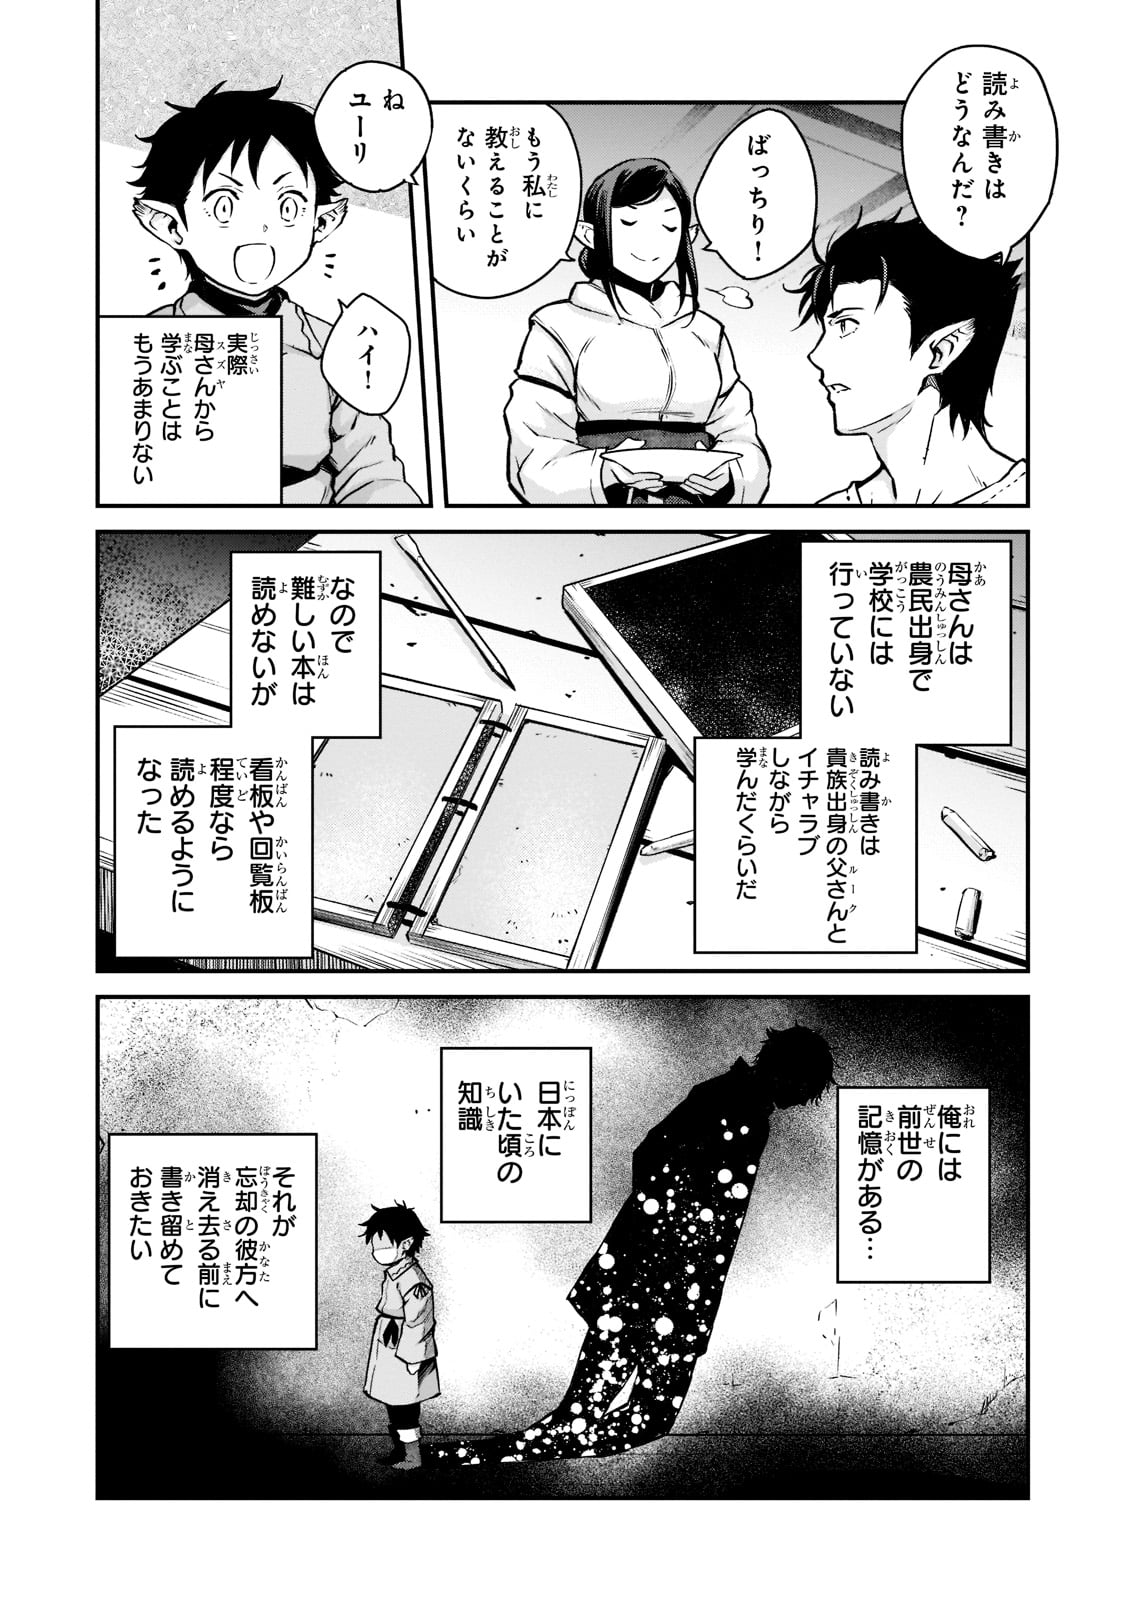 Horobi no Kuni no Seifukusha – Maou wa Sekai wo Seifuku suru you desu - Chapter 2 - Page 2